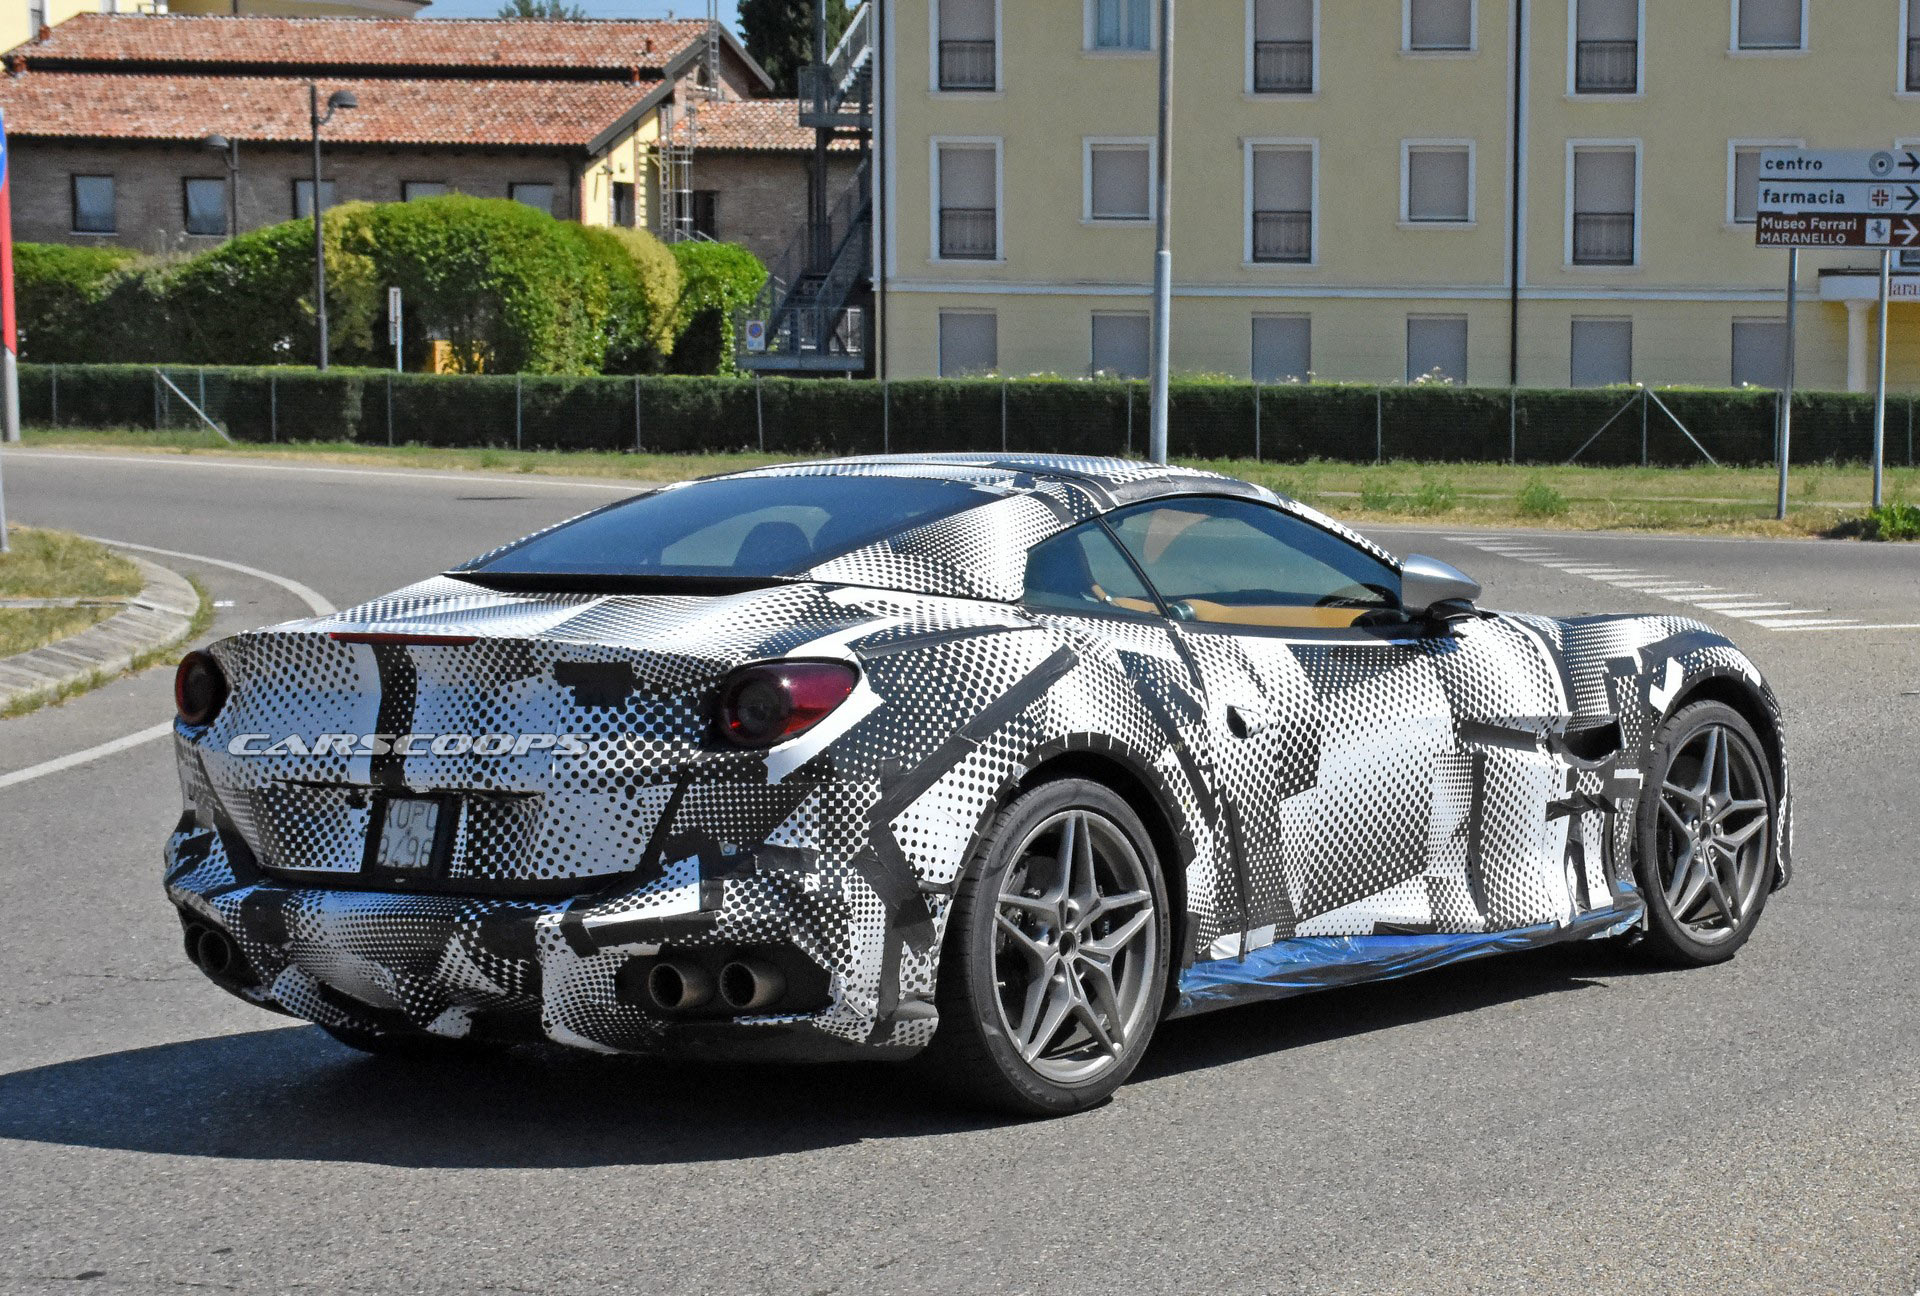 Facelifted Ferrari Portofino Spied Hiding Subtle Updates | Carscoops